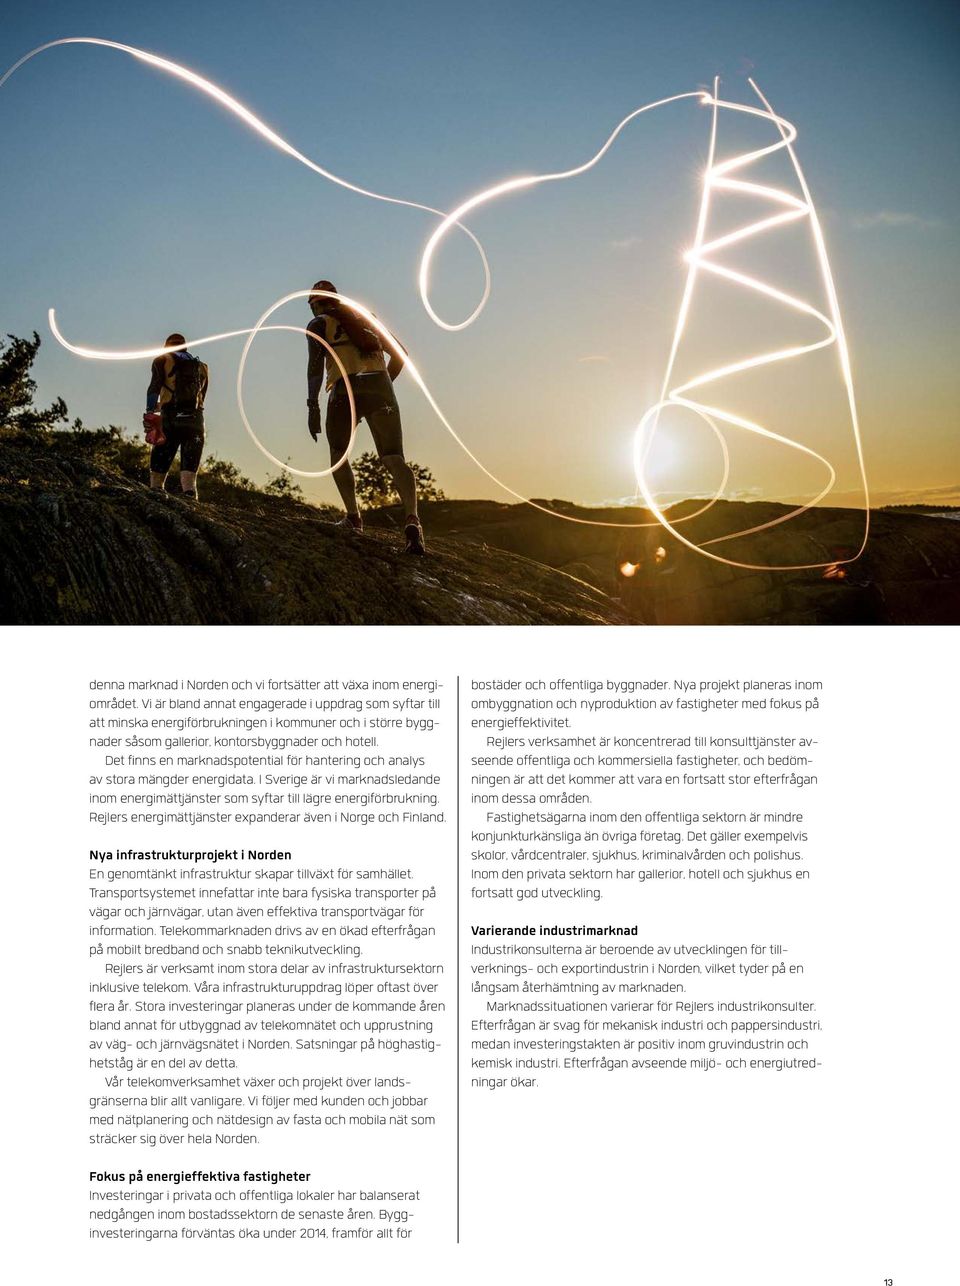 Det finns en marknadspotential för hantering och analys av stora mängder energidata. I Sverige är vi marknadsledande inom energimättjänster som syftar till lägre energiförbrukning.